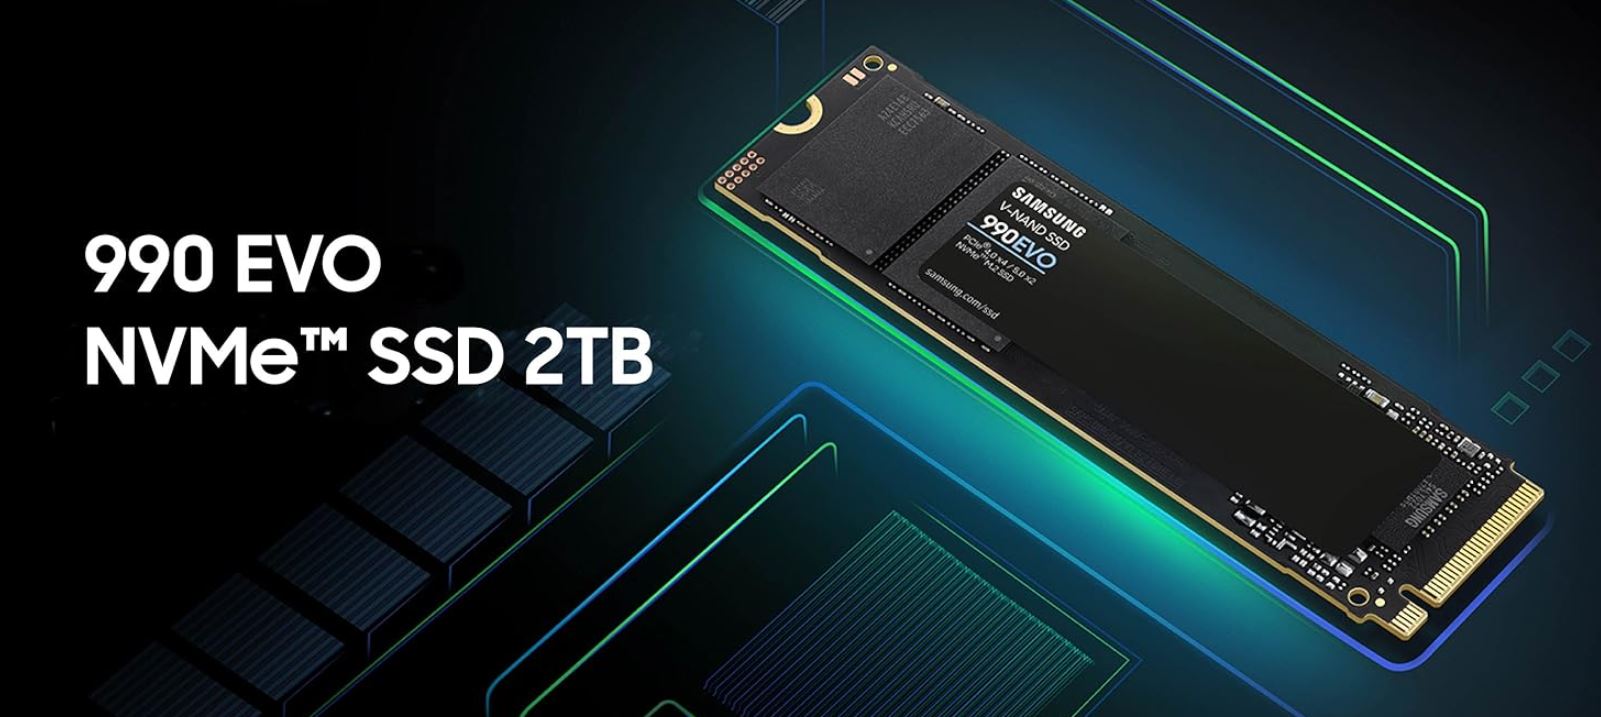 כונן SSD פנימי SAMSUNG 990 EVO 2TB